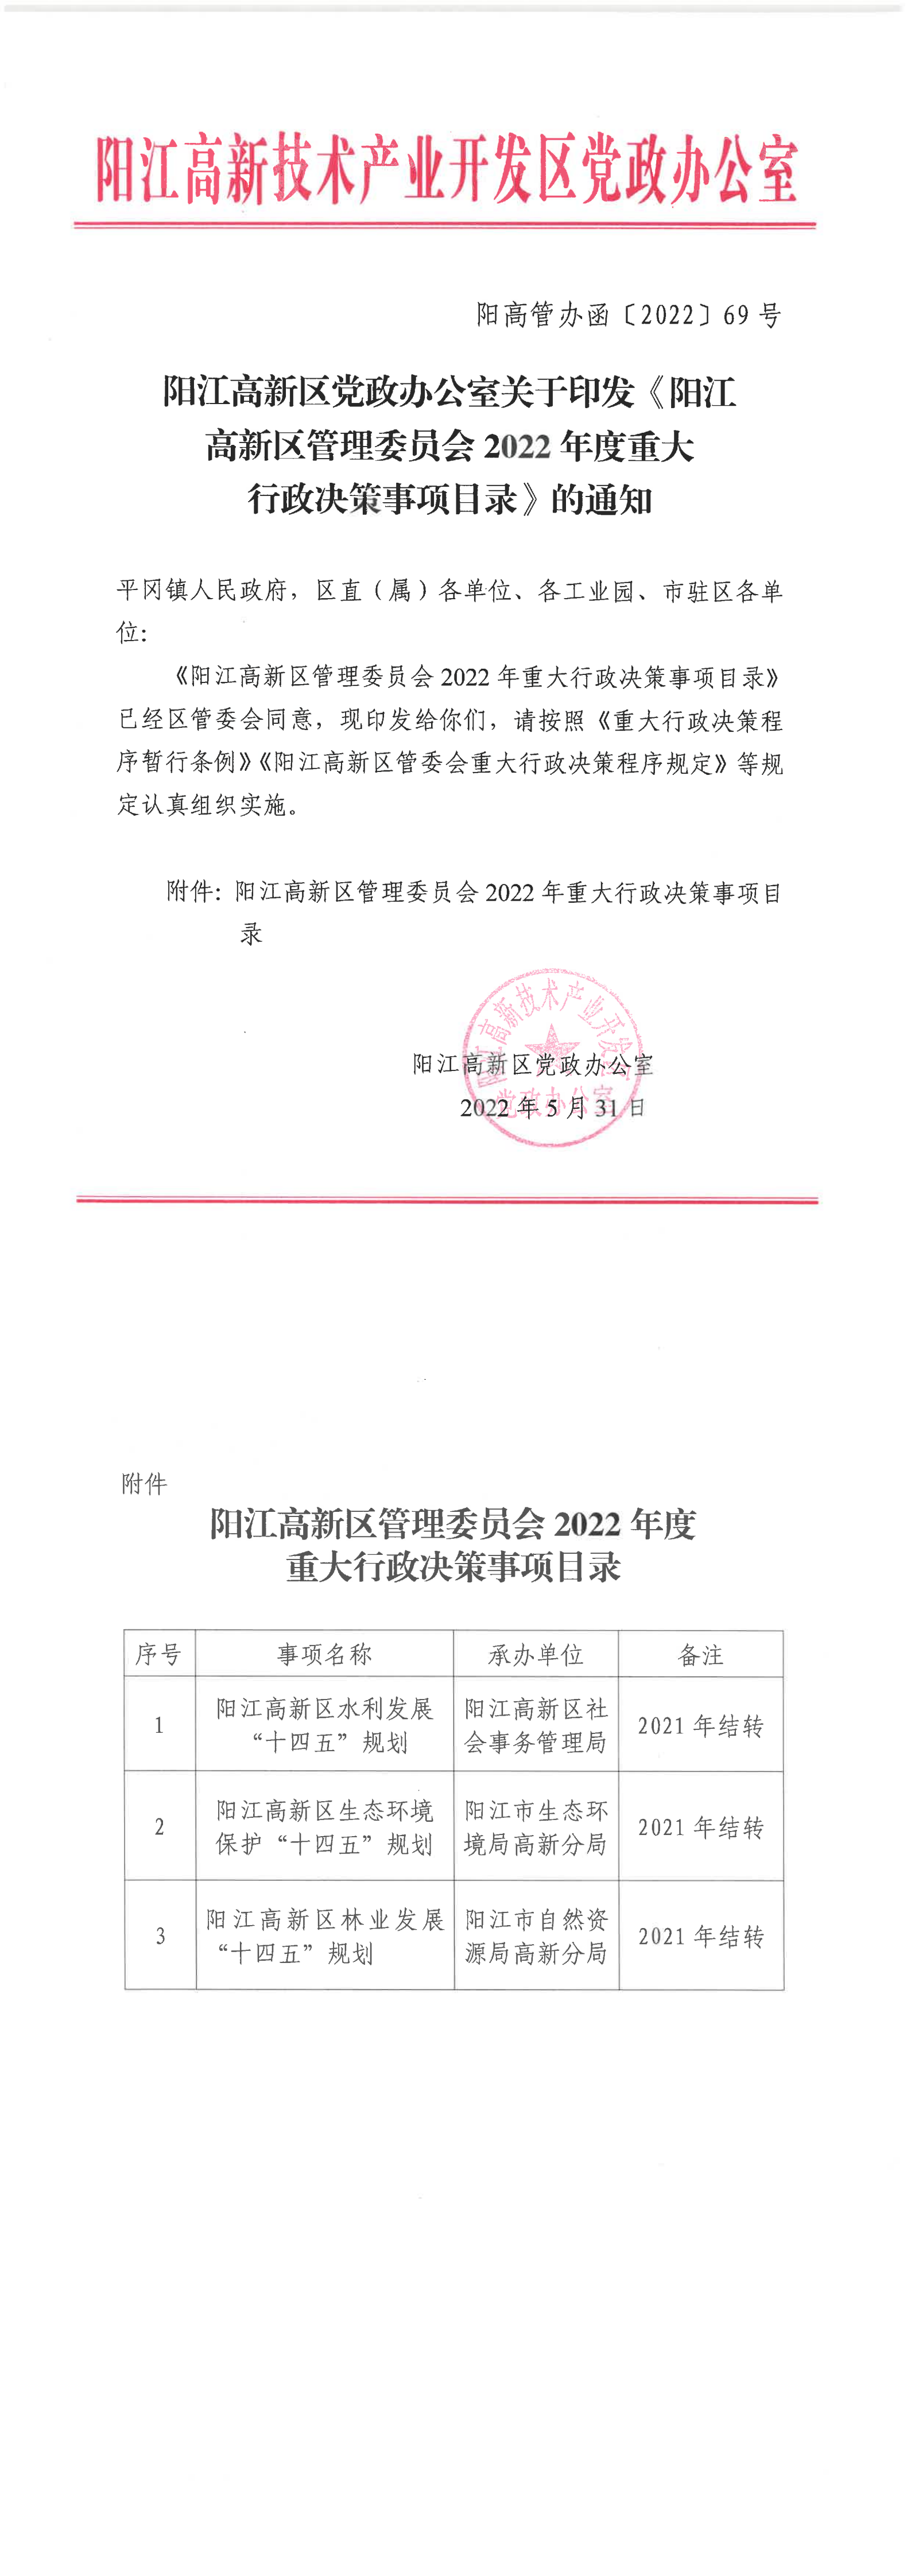 阳江高新区党政办公室关于印发《阳江高新区管理委员2022年度重大行政决策事项目录》的通知_00.png